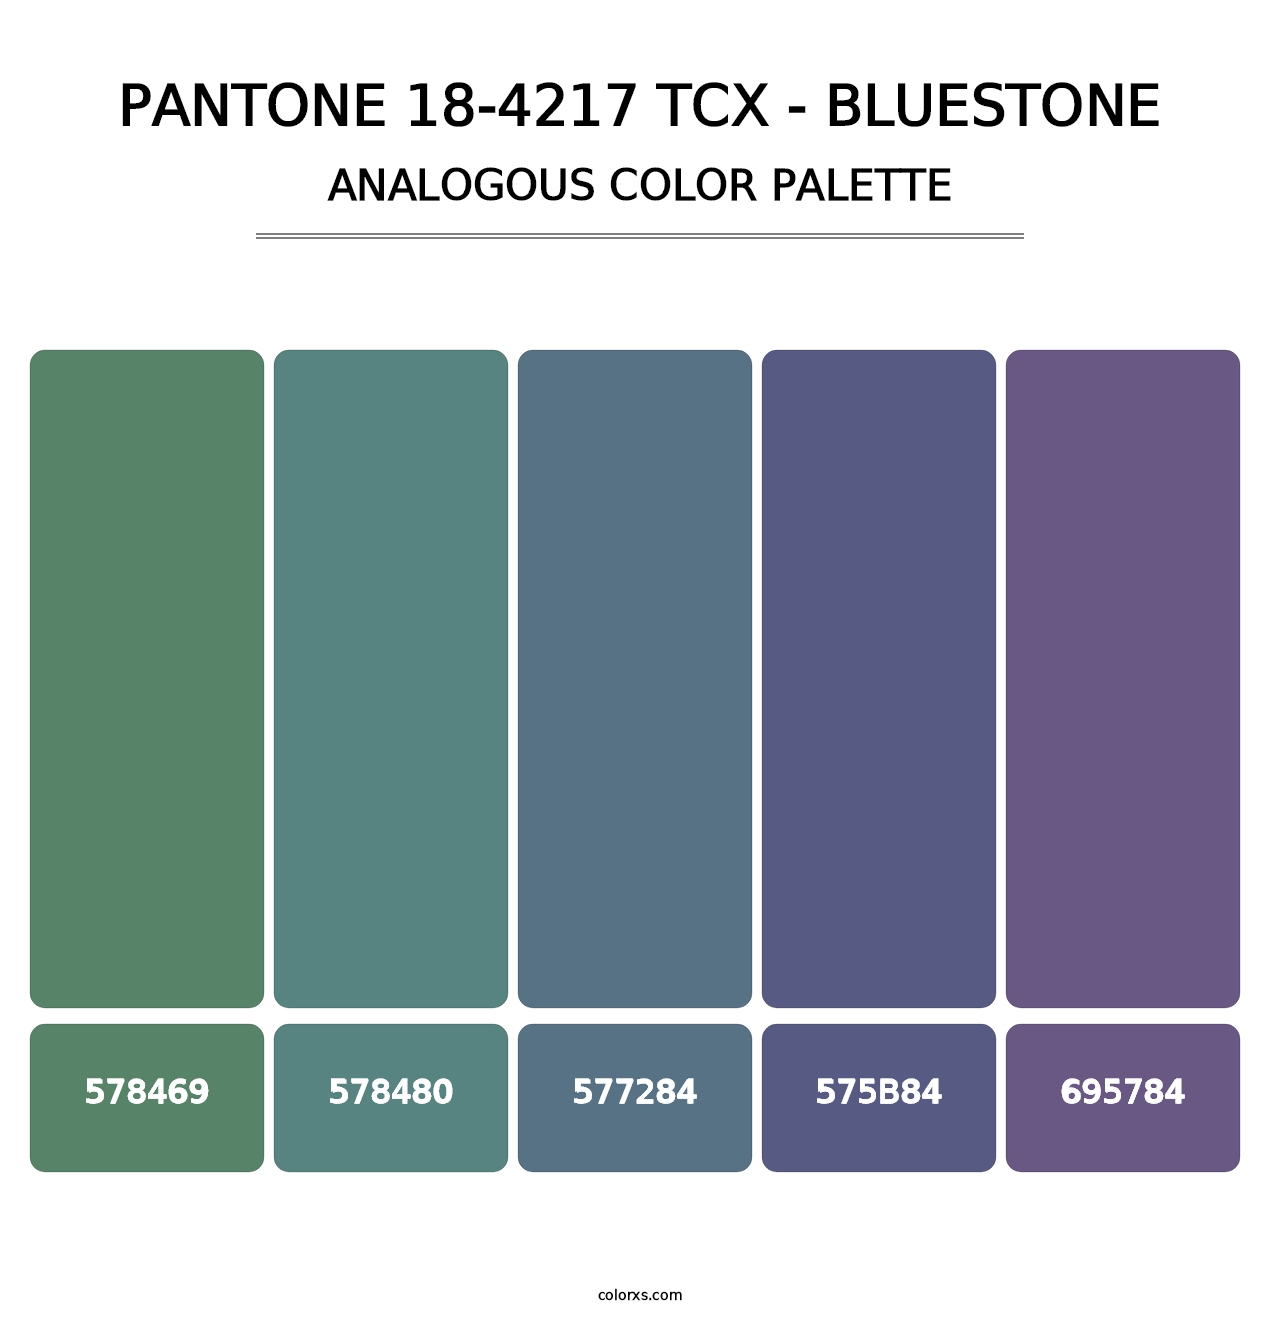 PANTONE 18-4217 TCX - Bluestone - Analogous Color Palette